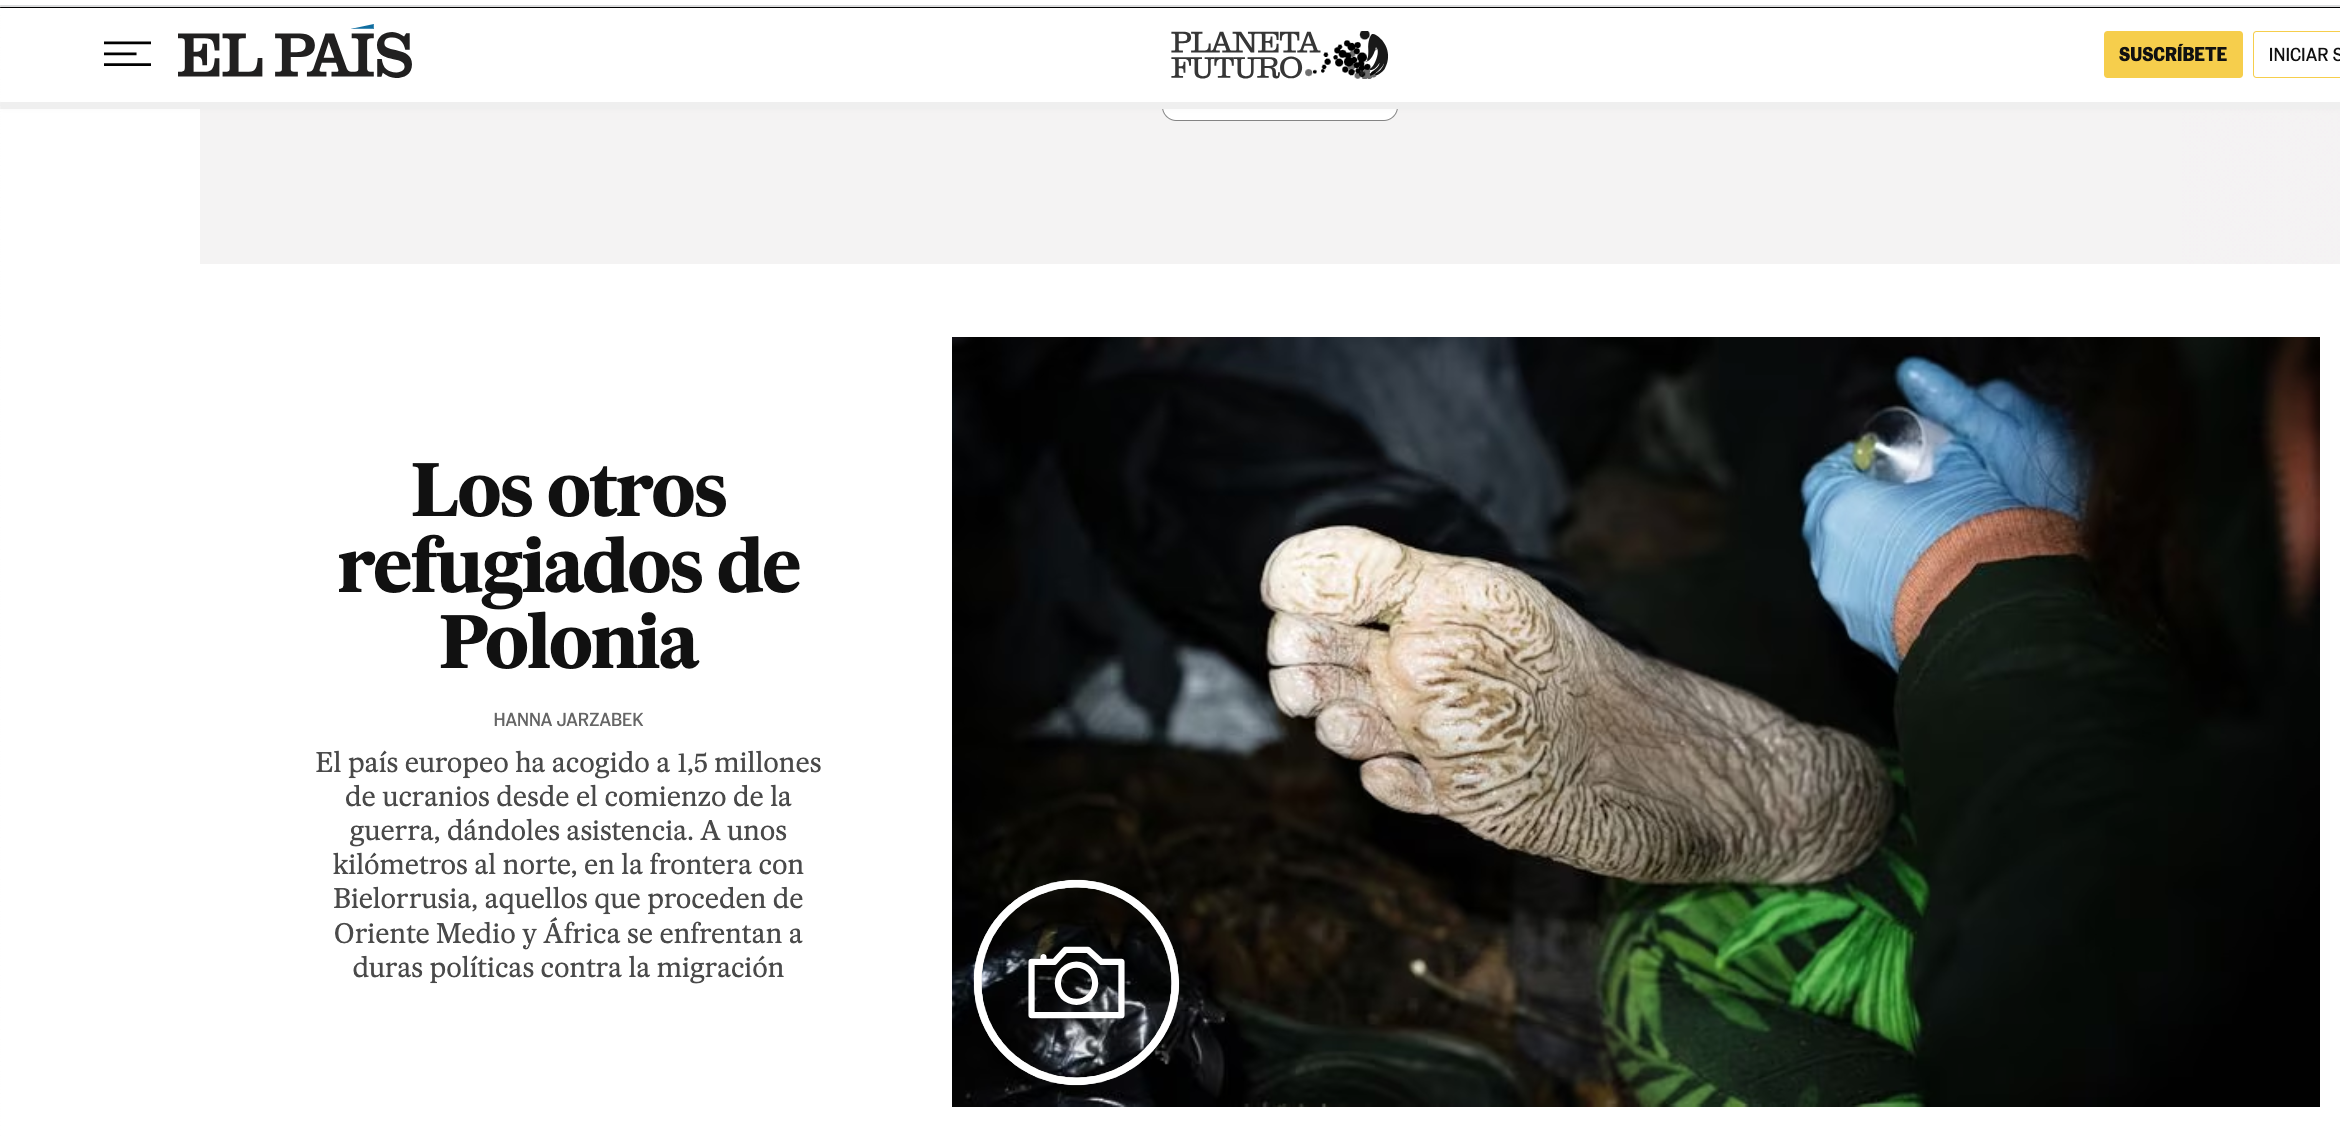 Tearsheets - press publications - El Pais Planeta Futuro (Spain)